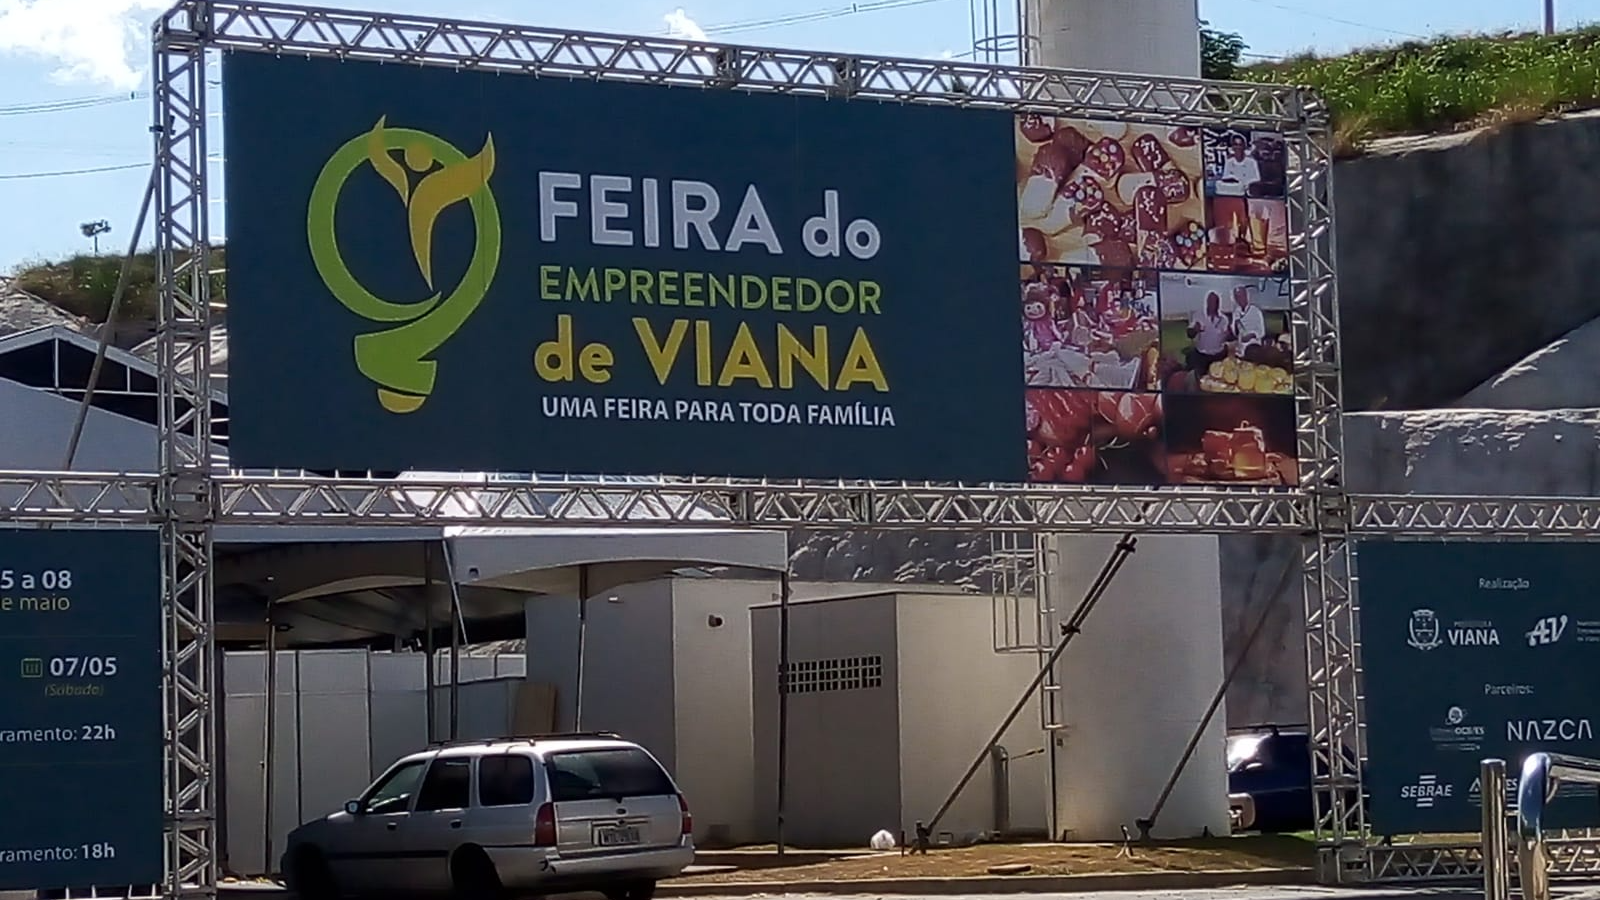 Feira do Empreendedor de Viana traz programação cultural e exposições